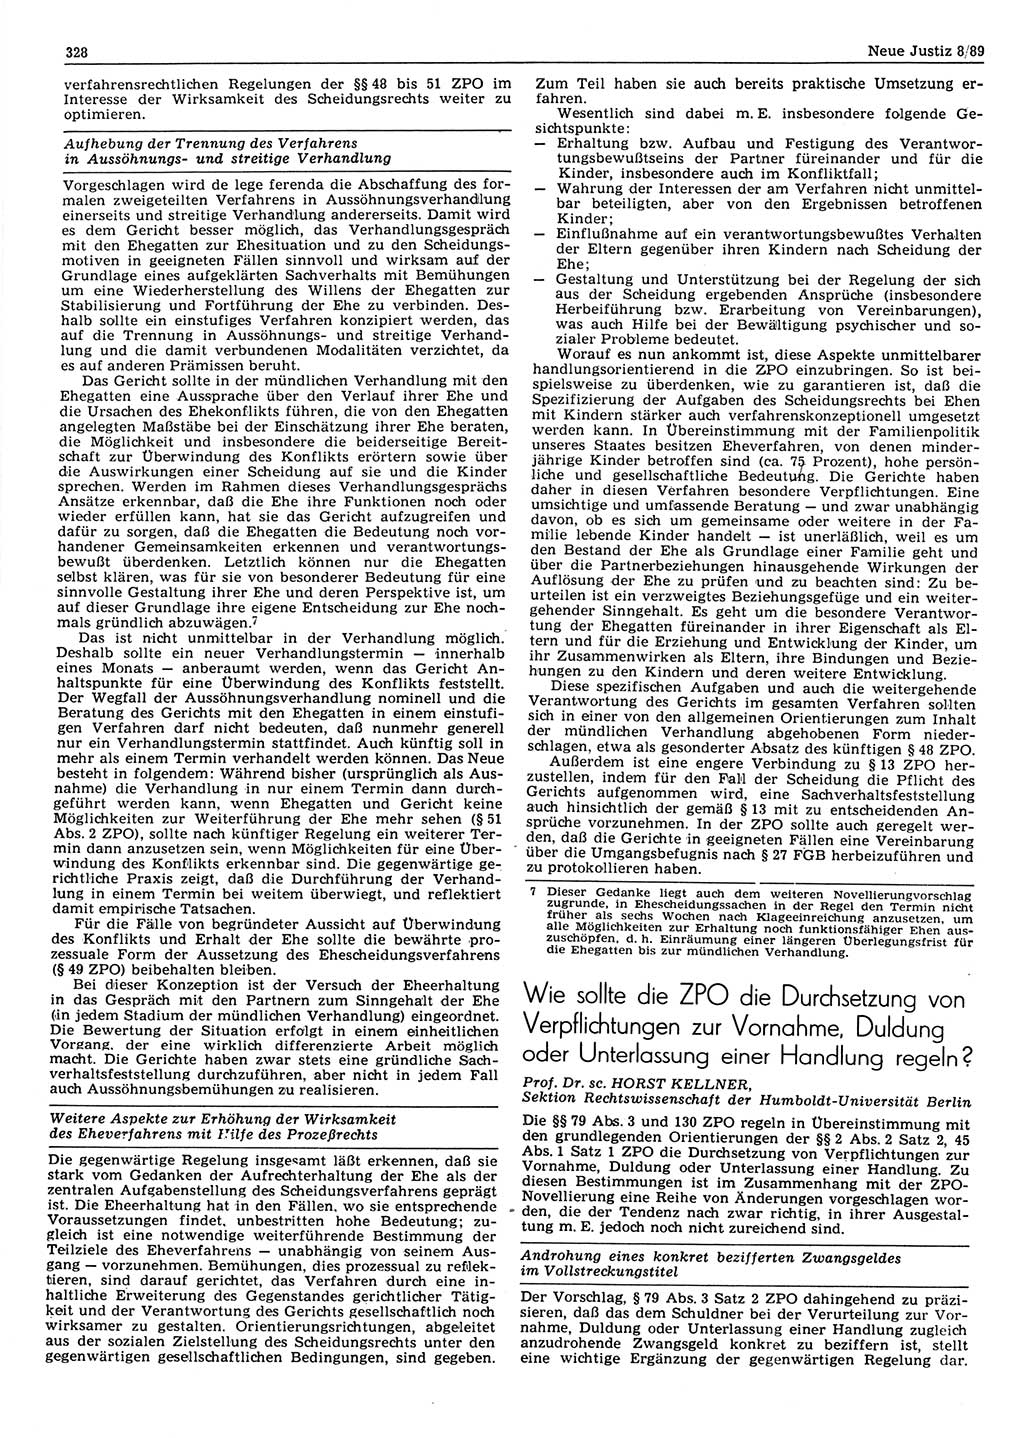 Neue Justiz (NJ), Zeitschrift für sozialistisches Recht und Gesetzlichkeit [Deutsche Demokratische Republik (DDR)], 43. Jahrgang 1989, Seite 328 (NJ DDR 1989, S. 328)